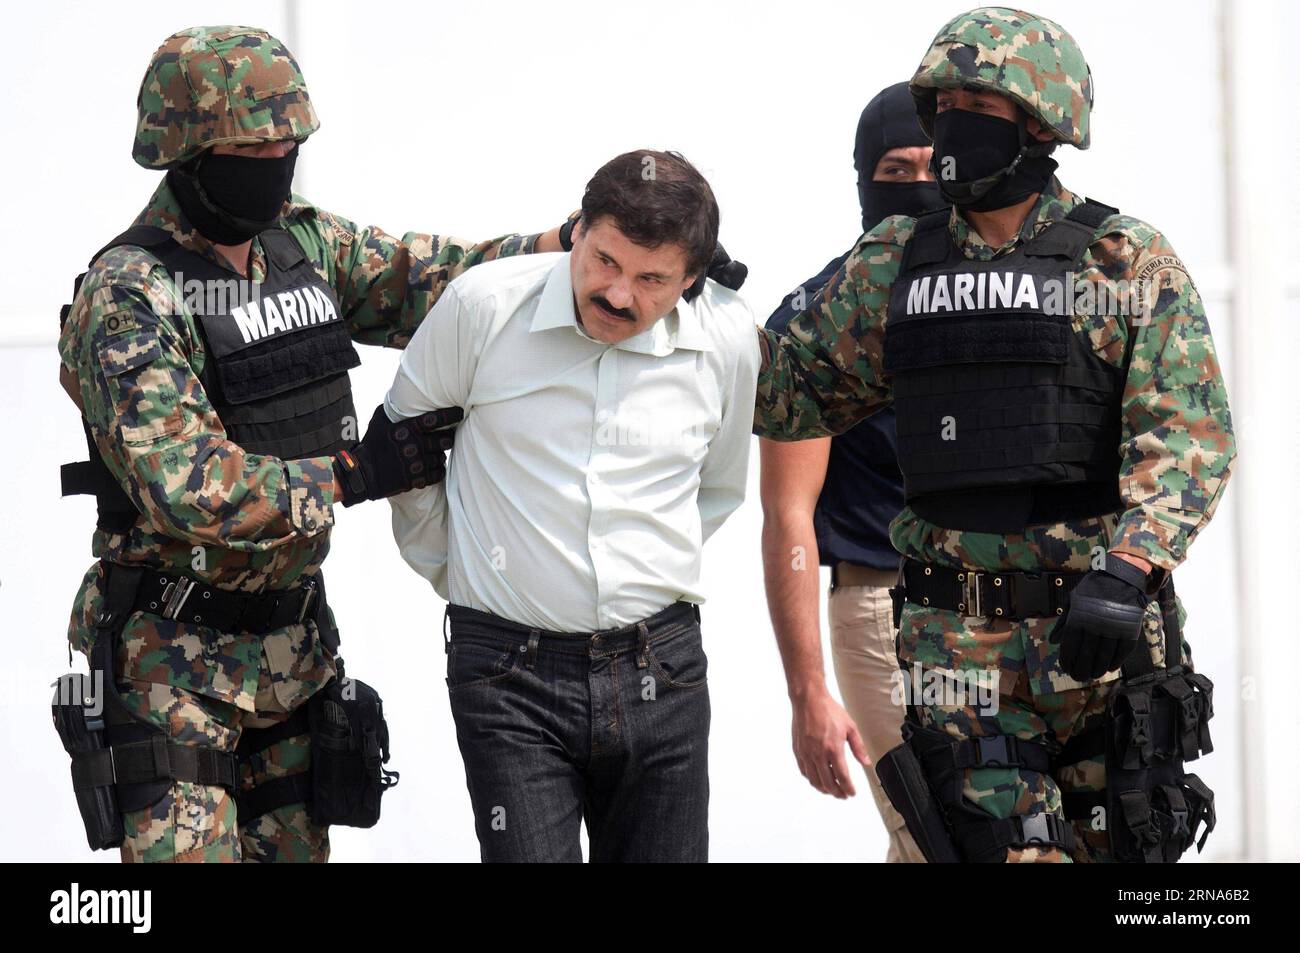 Drogenboss El Chapo Guzman à Mexiko gefasst -- MEXICO -- une photo prise le 22 février 2014 montre des membres de la marine mexicaine qui gardent Joaquin Guzman Loera (C), alias El Chapo , lors de sa présentation aux médias à Mexico, capitale du Mexique. Le fugitif roi de la drogue Joaquin El Chapo Guzman a été repris plusieurs mois après son évasion de prison, a déclaré le président Enrique Pena Nieto le 8 janvier 2016. (fnc) MEXICO-MEXICO CITY-GUZMAN LOERA-RECAPTURE DavidxdexlaxPaz PUBLICATIONxNOTxINxCHN Banque D'Images